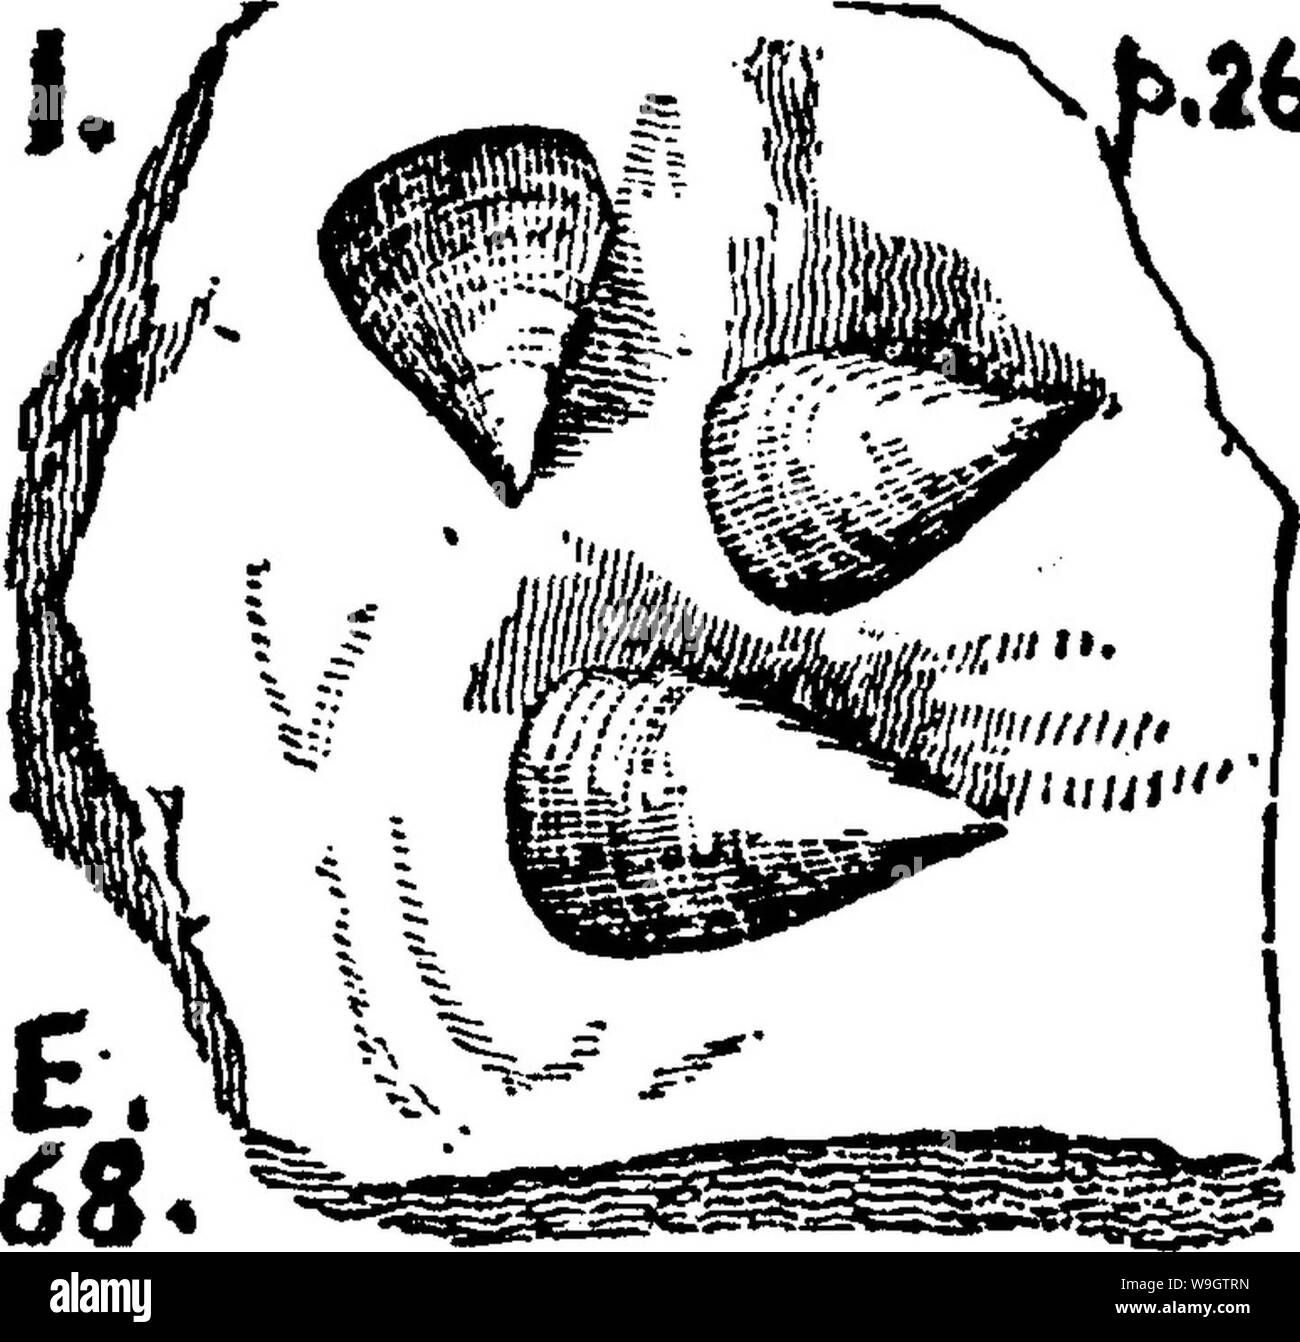 Archiv Bild ab Seite 357 von einem Wörterbuch der Fossilien Stockfoto